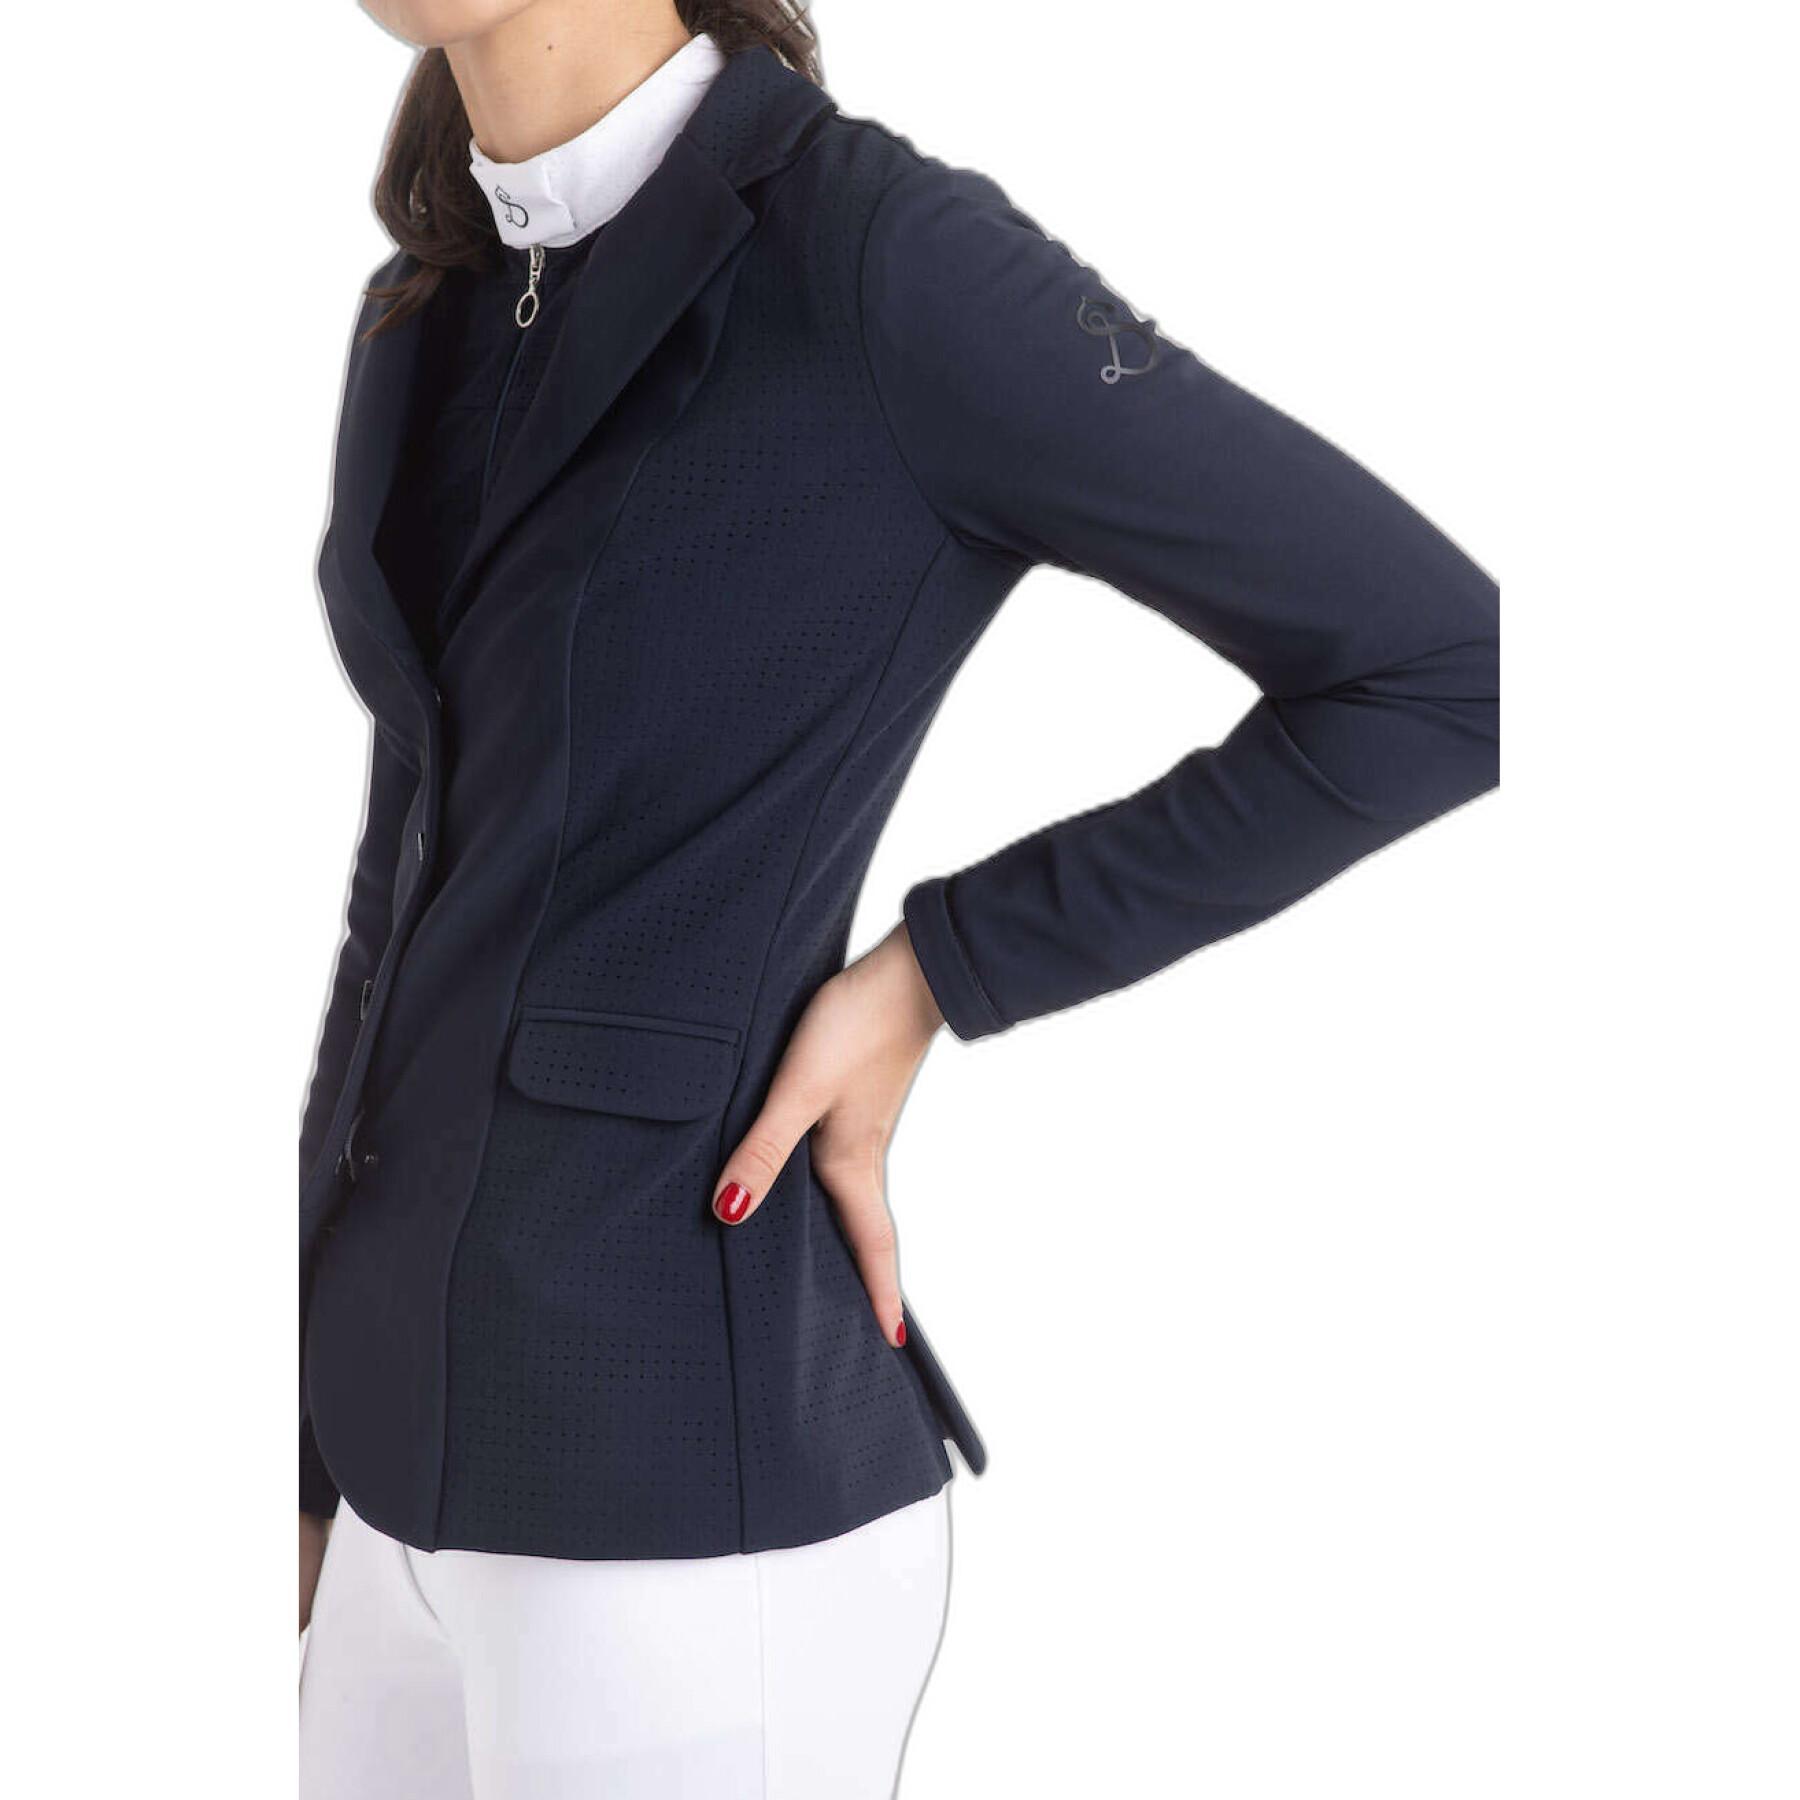 Women's competition jacket Le Sabotier Agatha